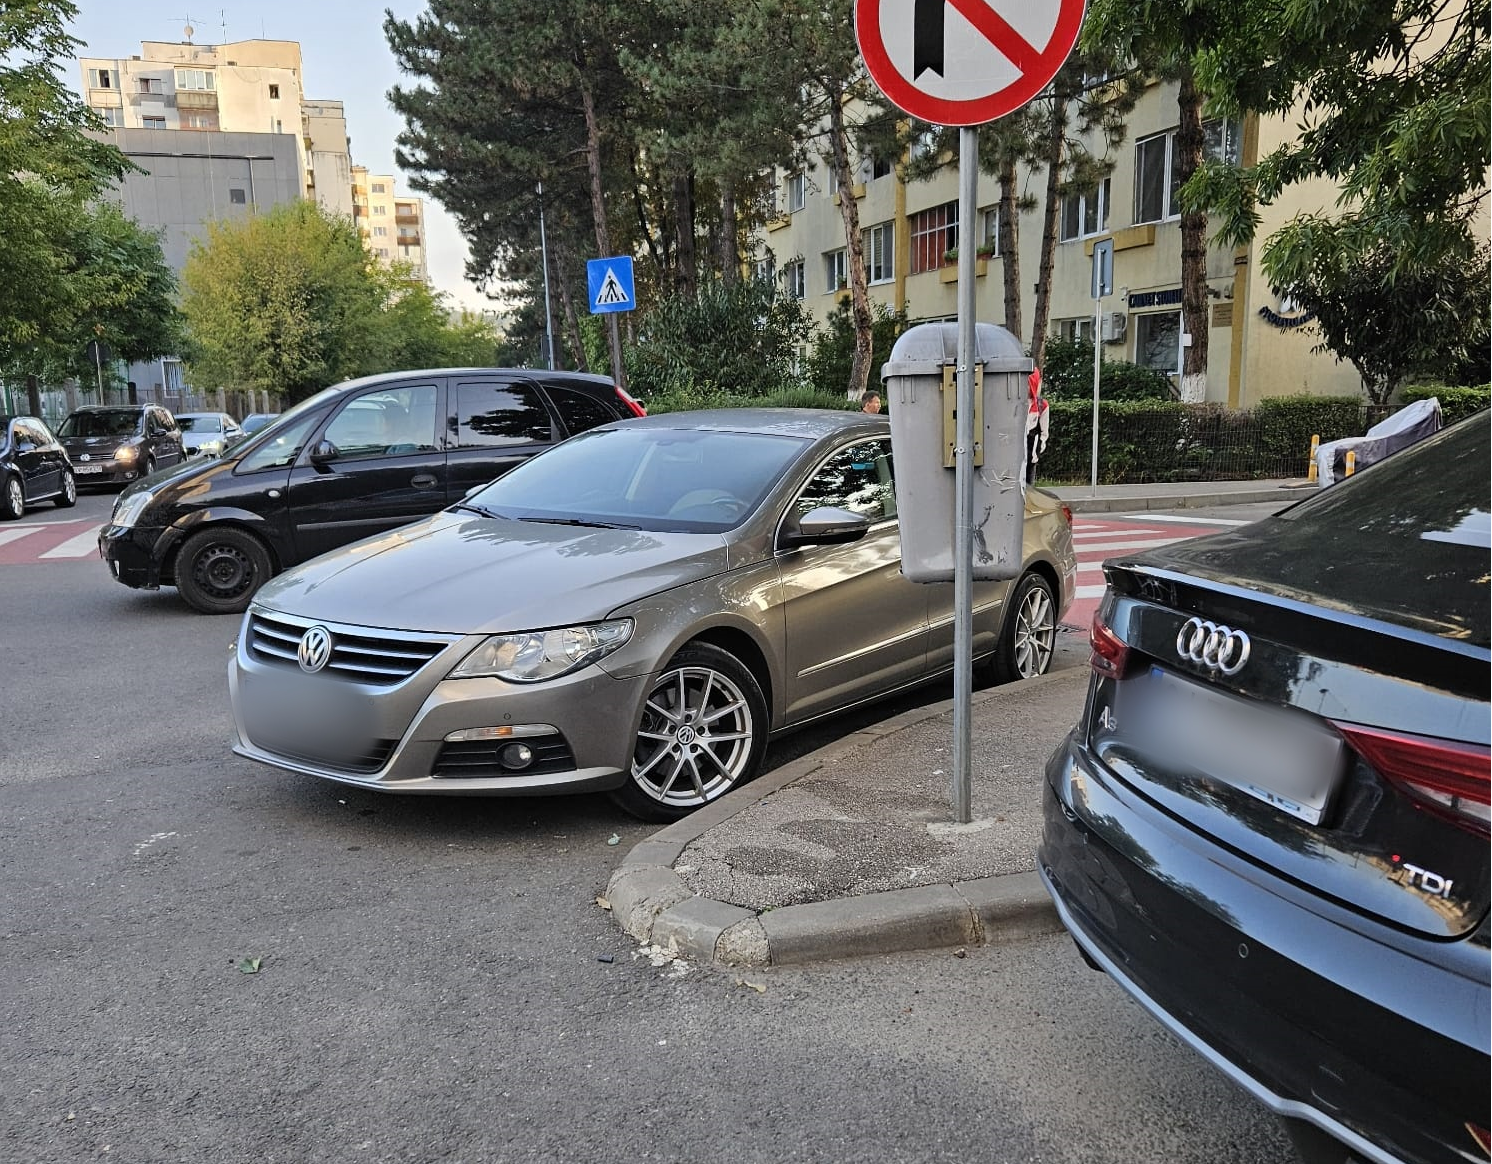 Pericol de accident pe o stradă din Mănăștur: Dacă va fi accident, mă duc și depun mărturie - FOTO